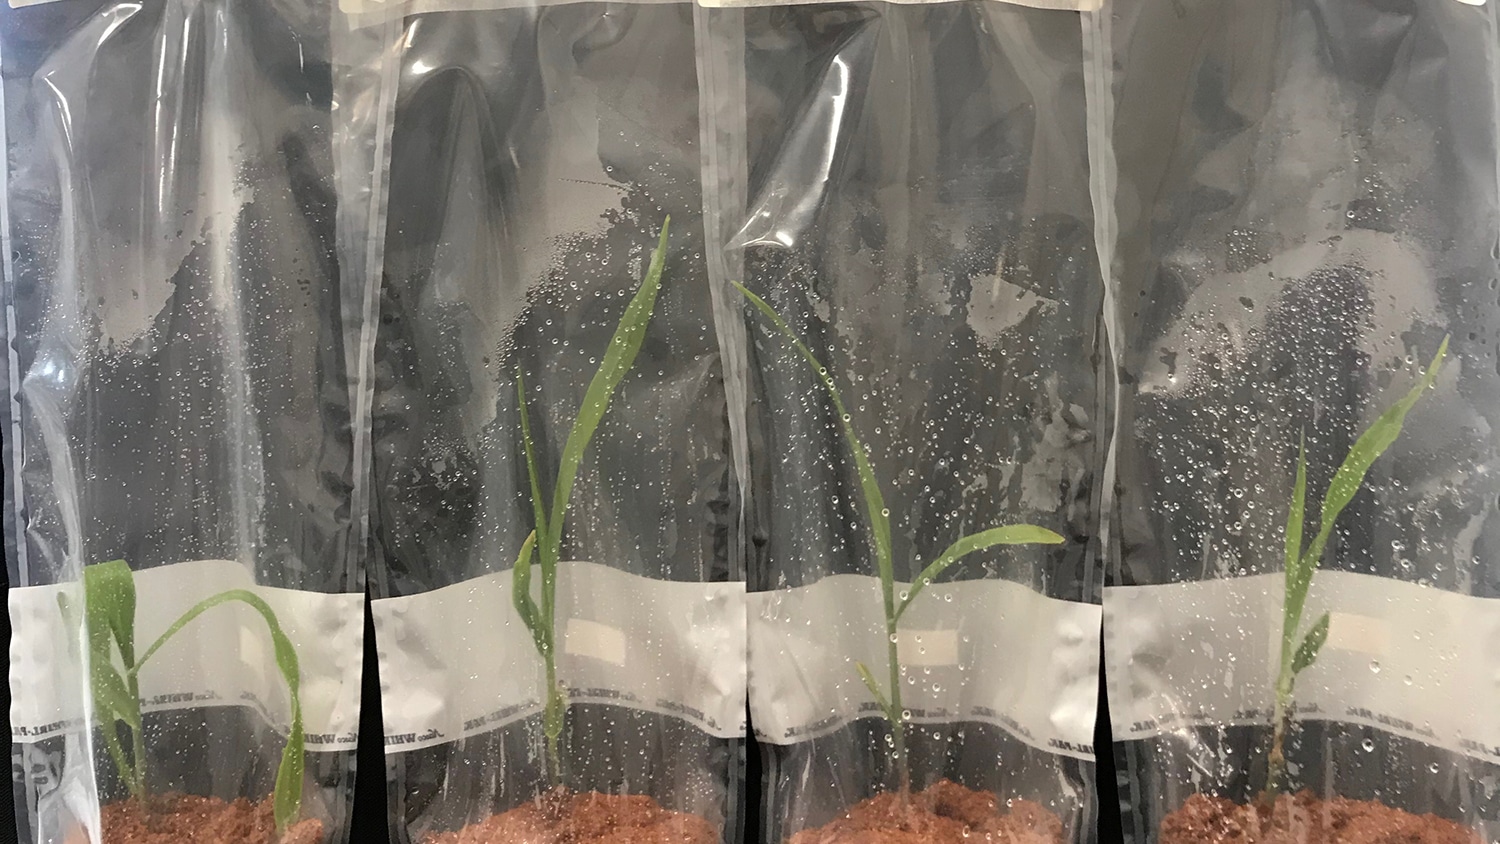 Dr. Kleiner's Plant Experiments